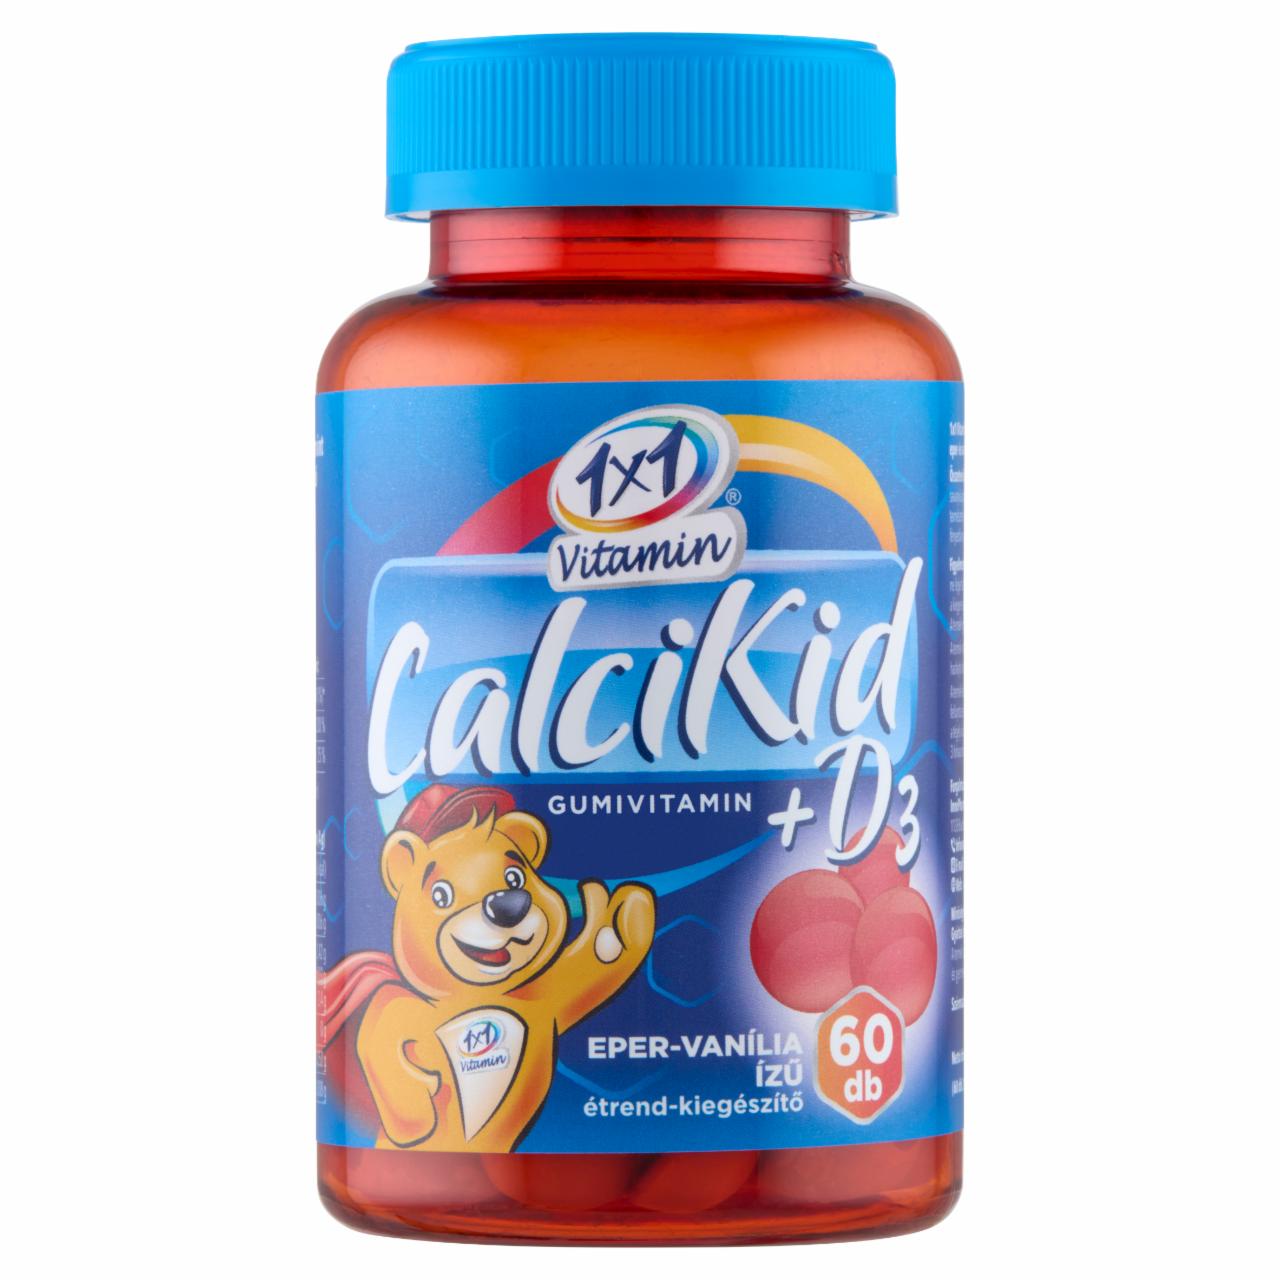 Képek - 1x1 Vitamin CalciKid eper- és vanília-ízű étrend-kiegészítő gumivitamin 60 x 2 g (120 g)